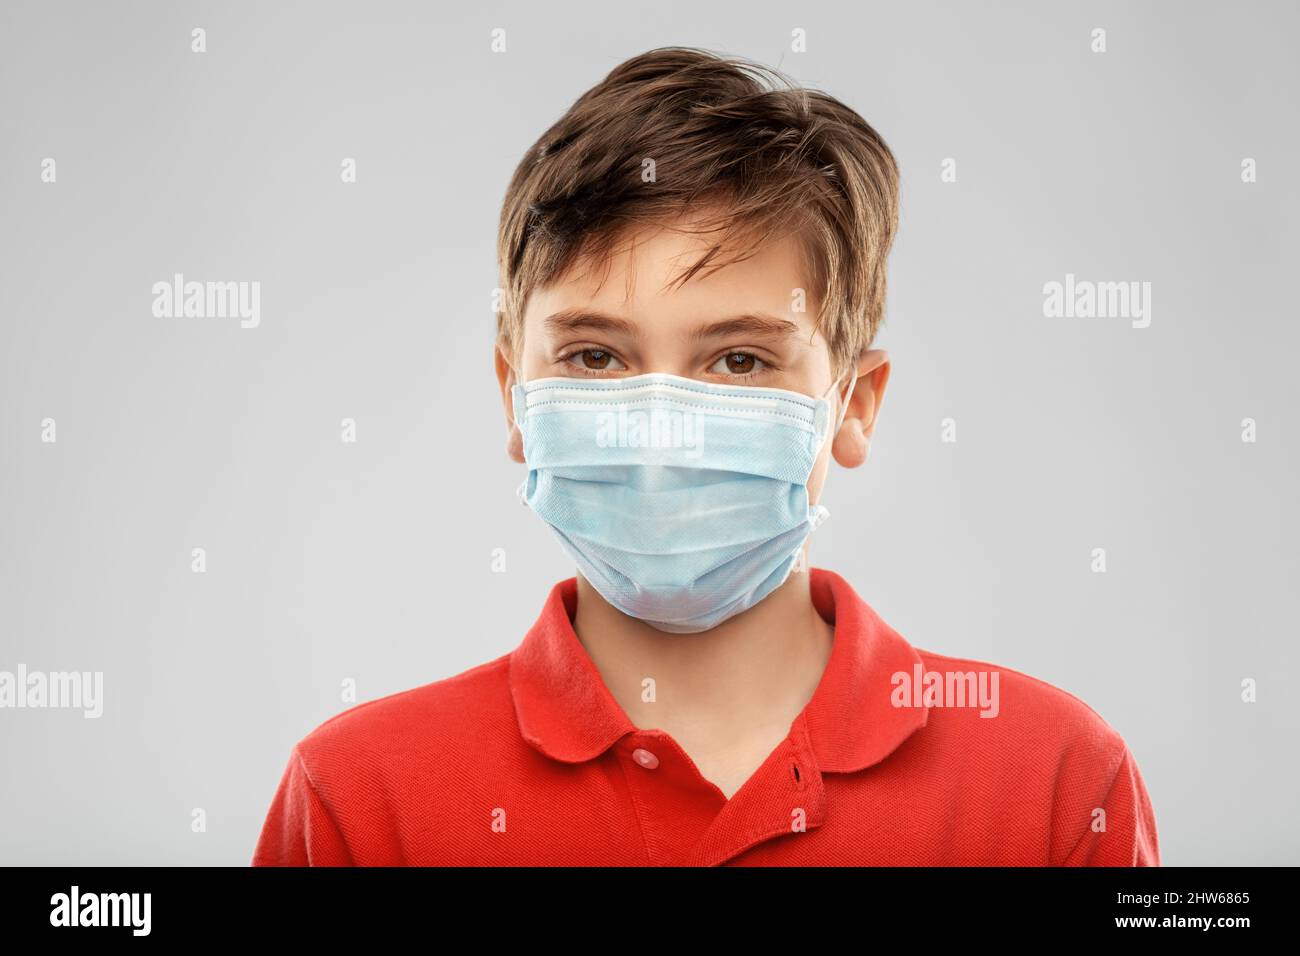 niño con máscara médica protectora Foto de stock